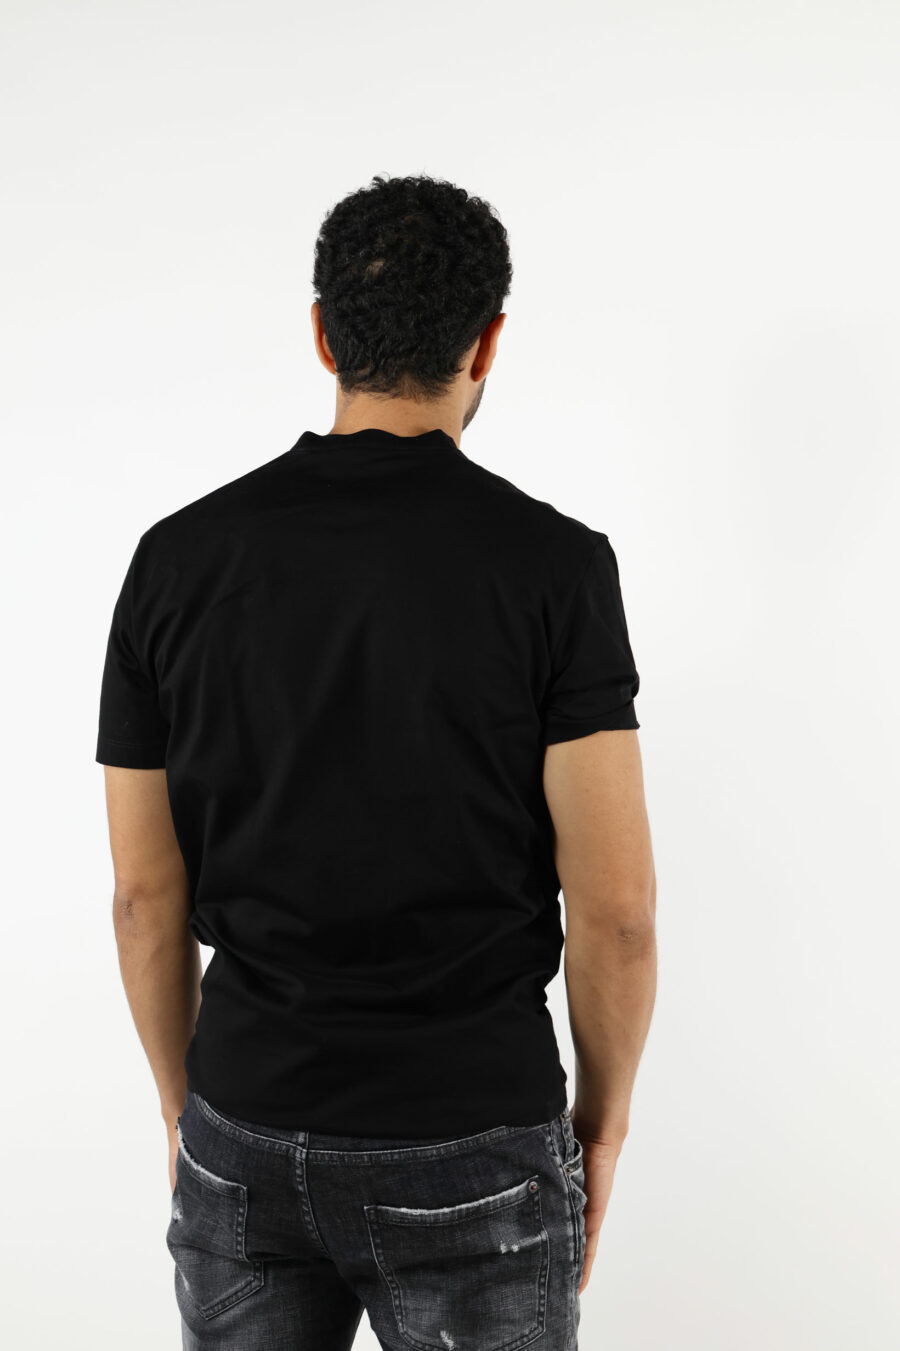 Camiseta negra con maxilogo negro en relieve - 111287